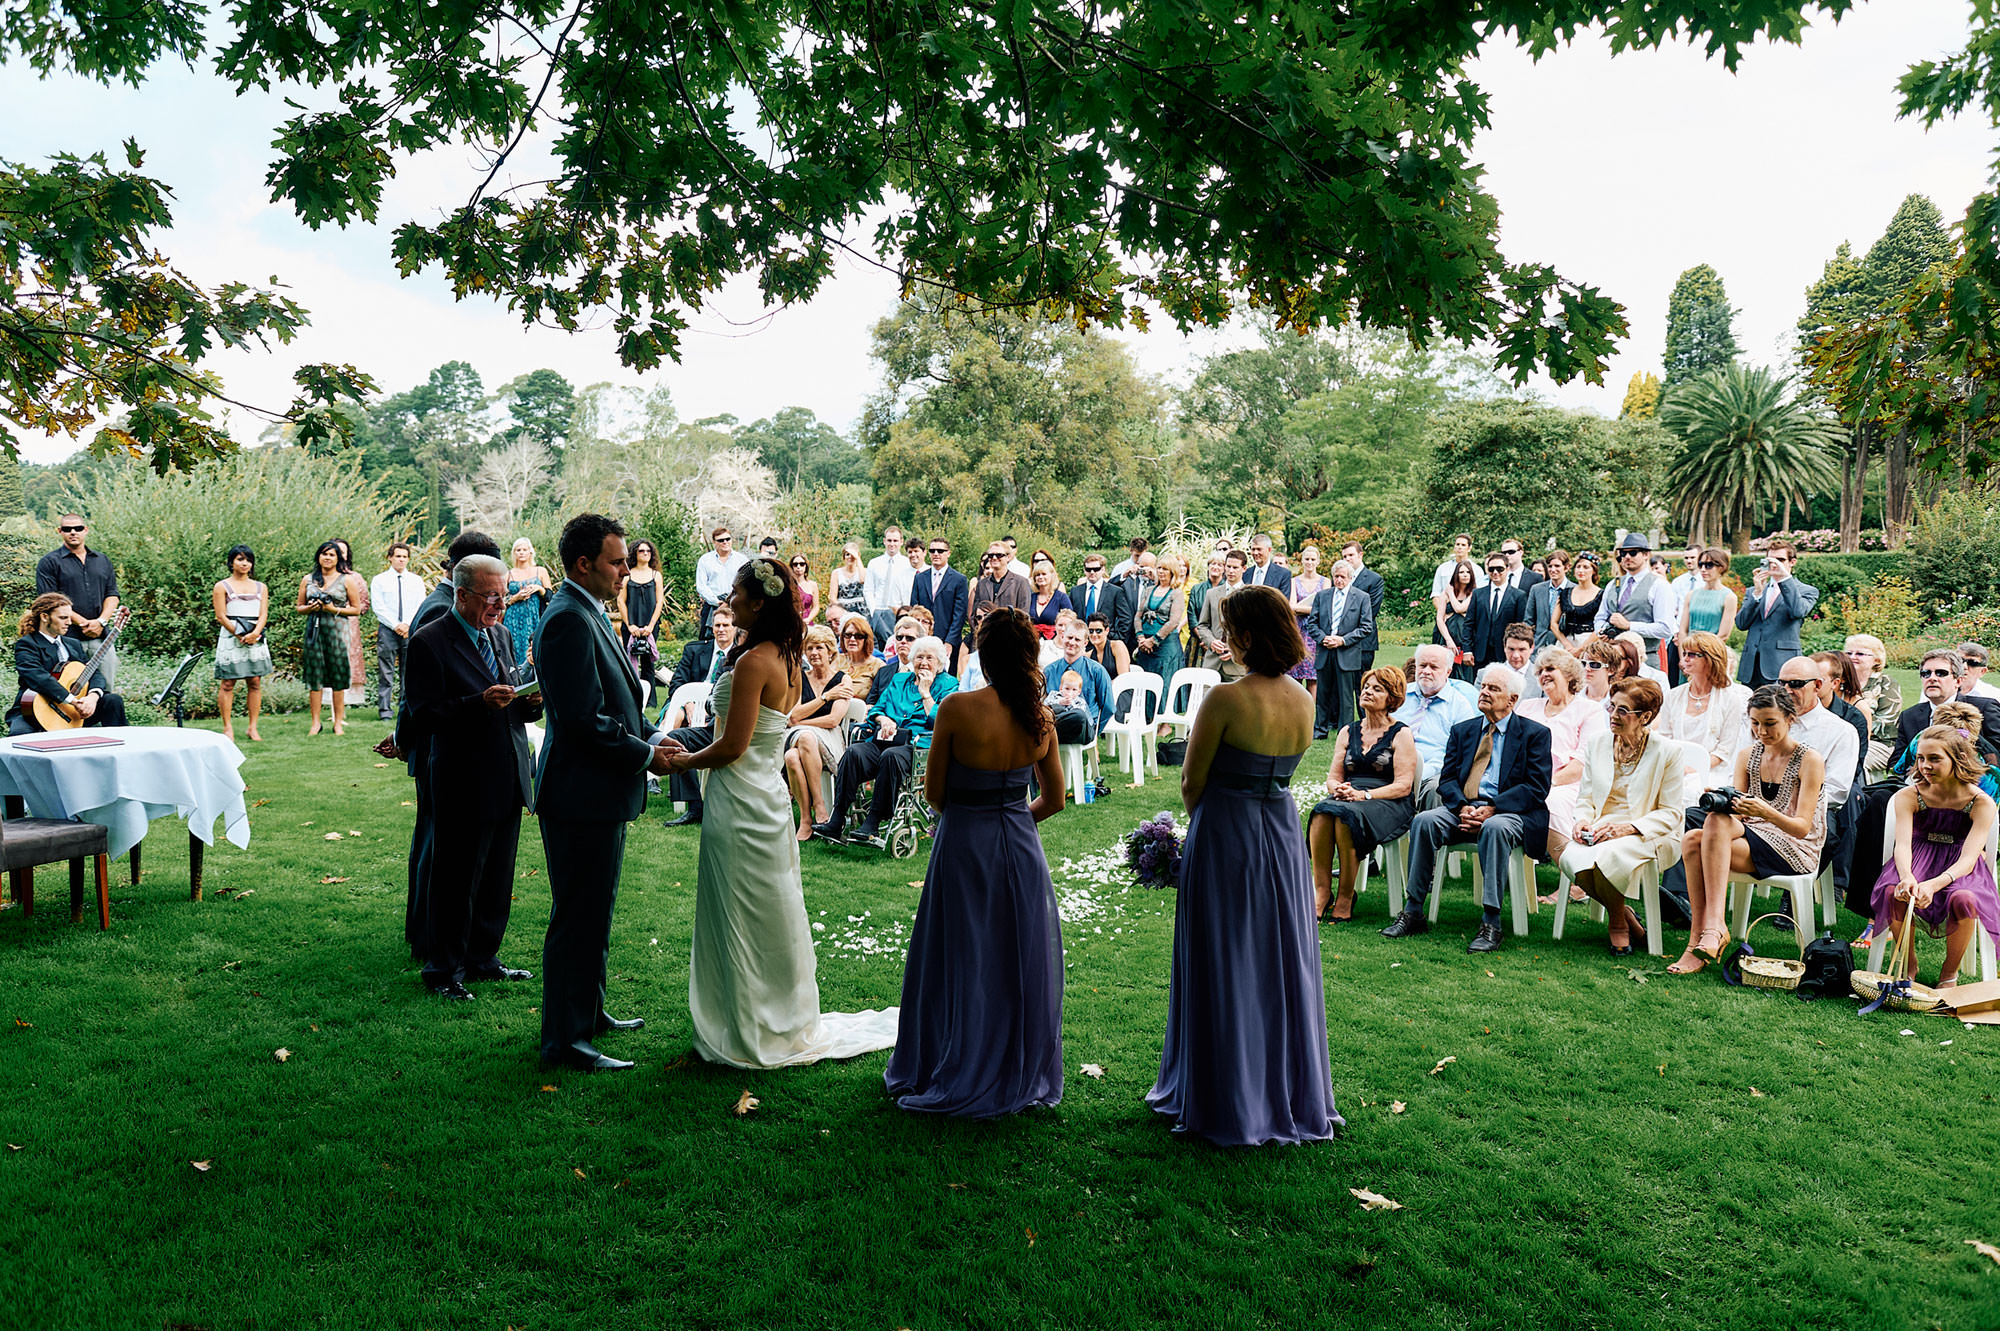 Wedding vows under tree at Craigieburn